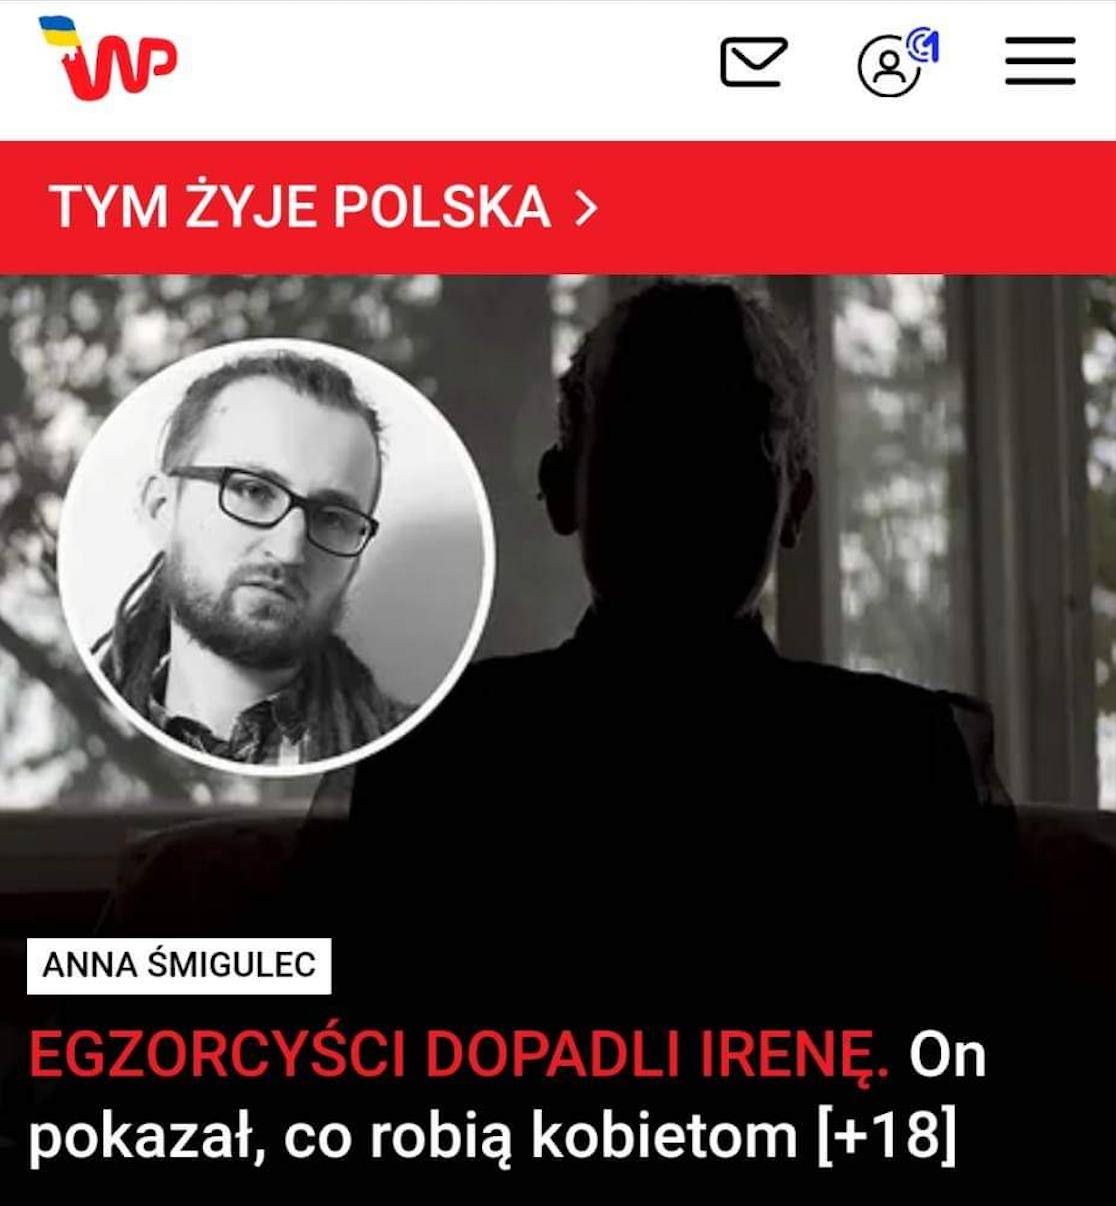 Wywiad w Wirtualnej Polsce